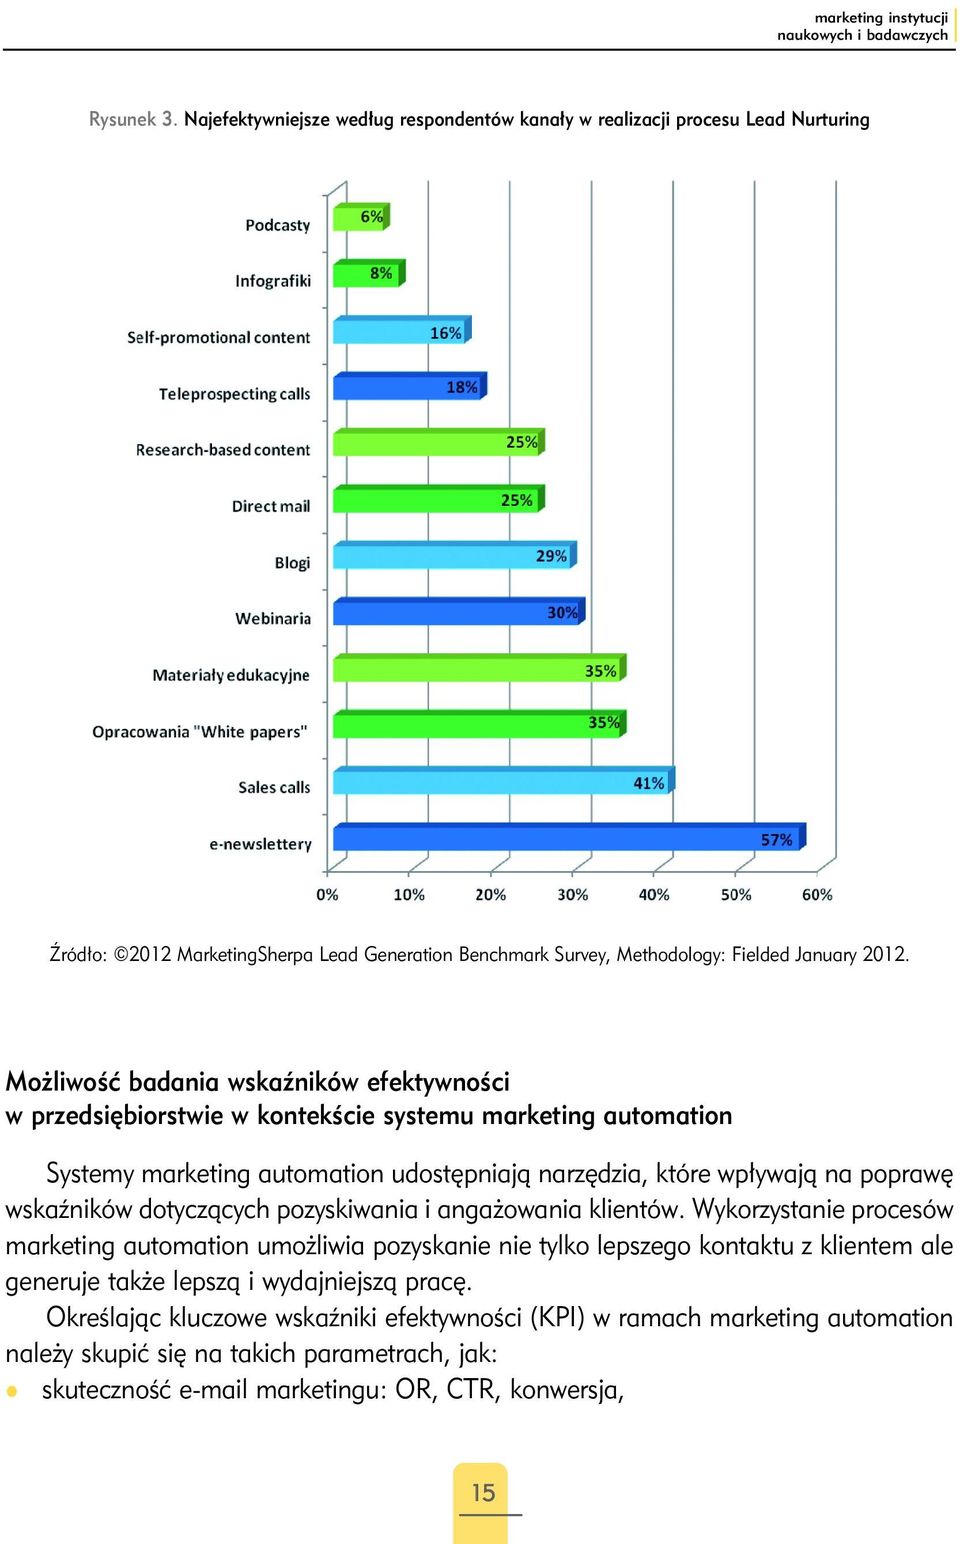 Możliwość badania wskaźników efektywności w przedsiębiorstwie w kontekście systemu marketing automation Systemy marketing automation udostępniają narzędzia, które wpływają na poprawę wskaźników